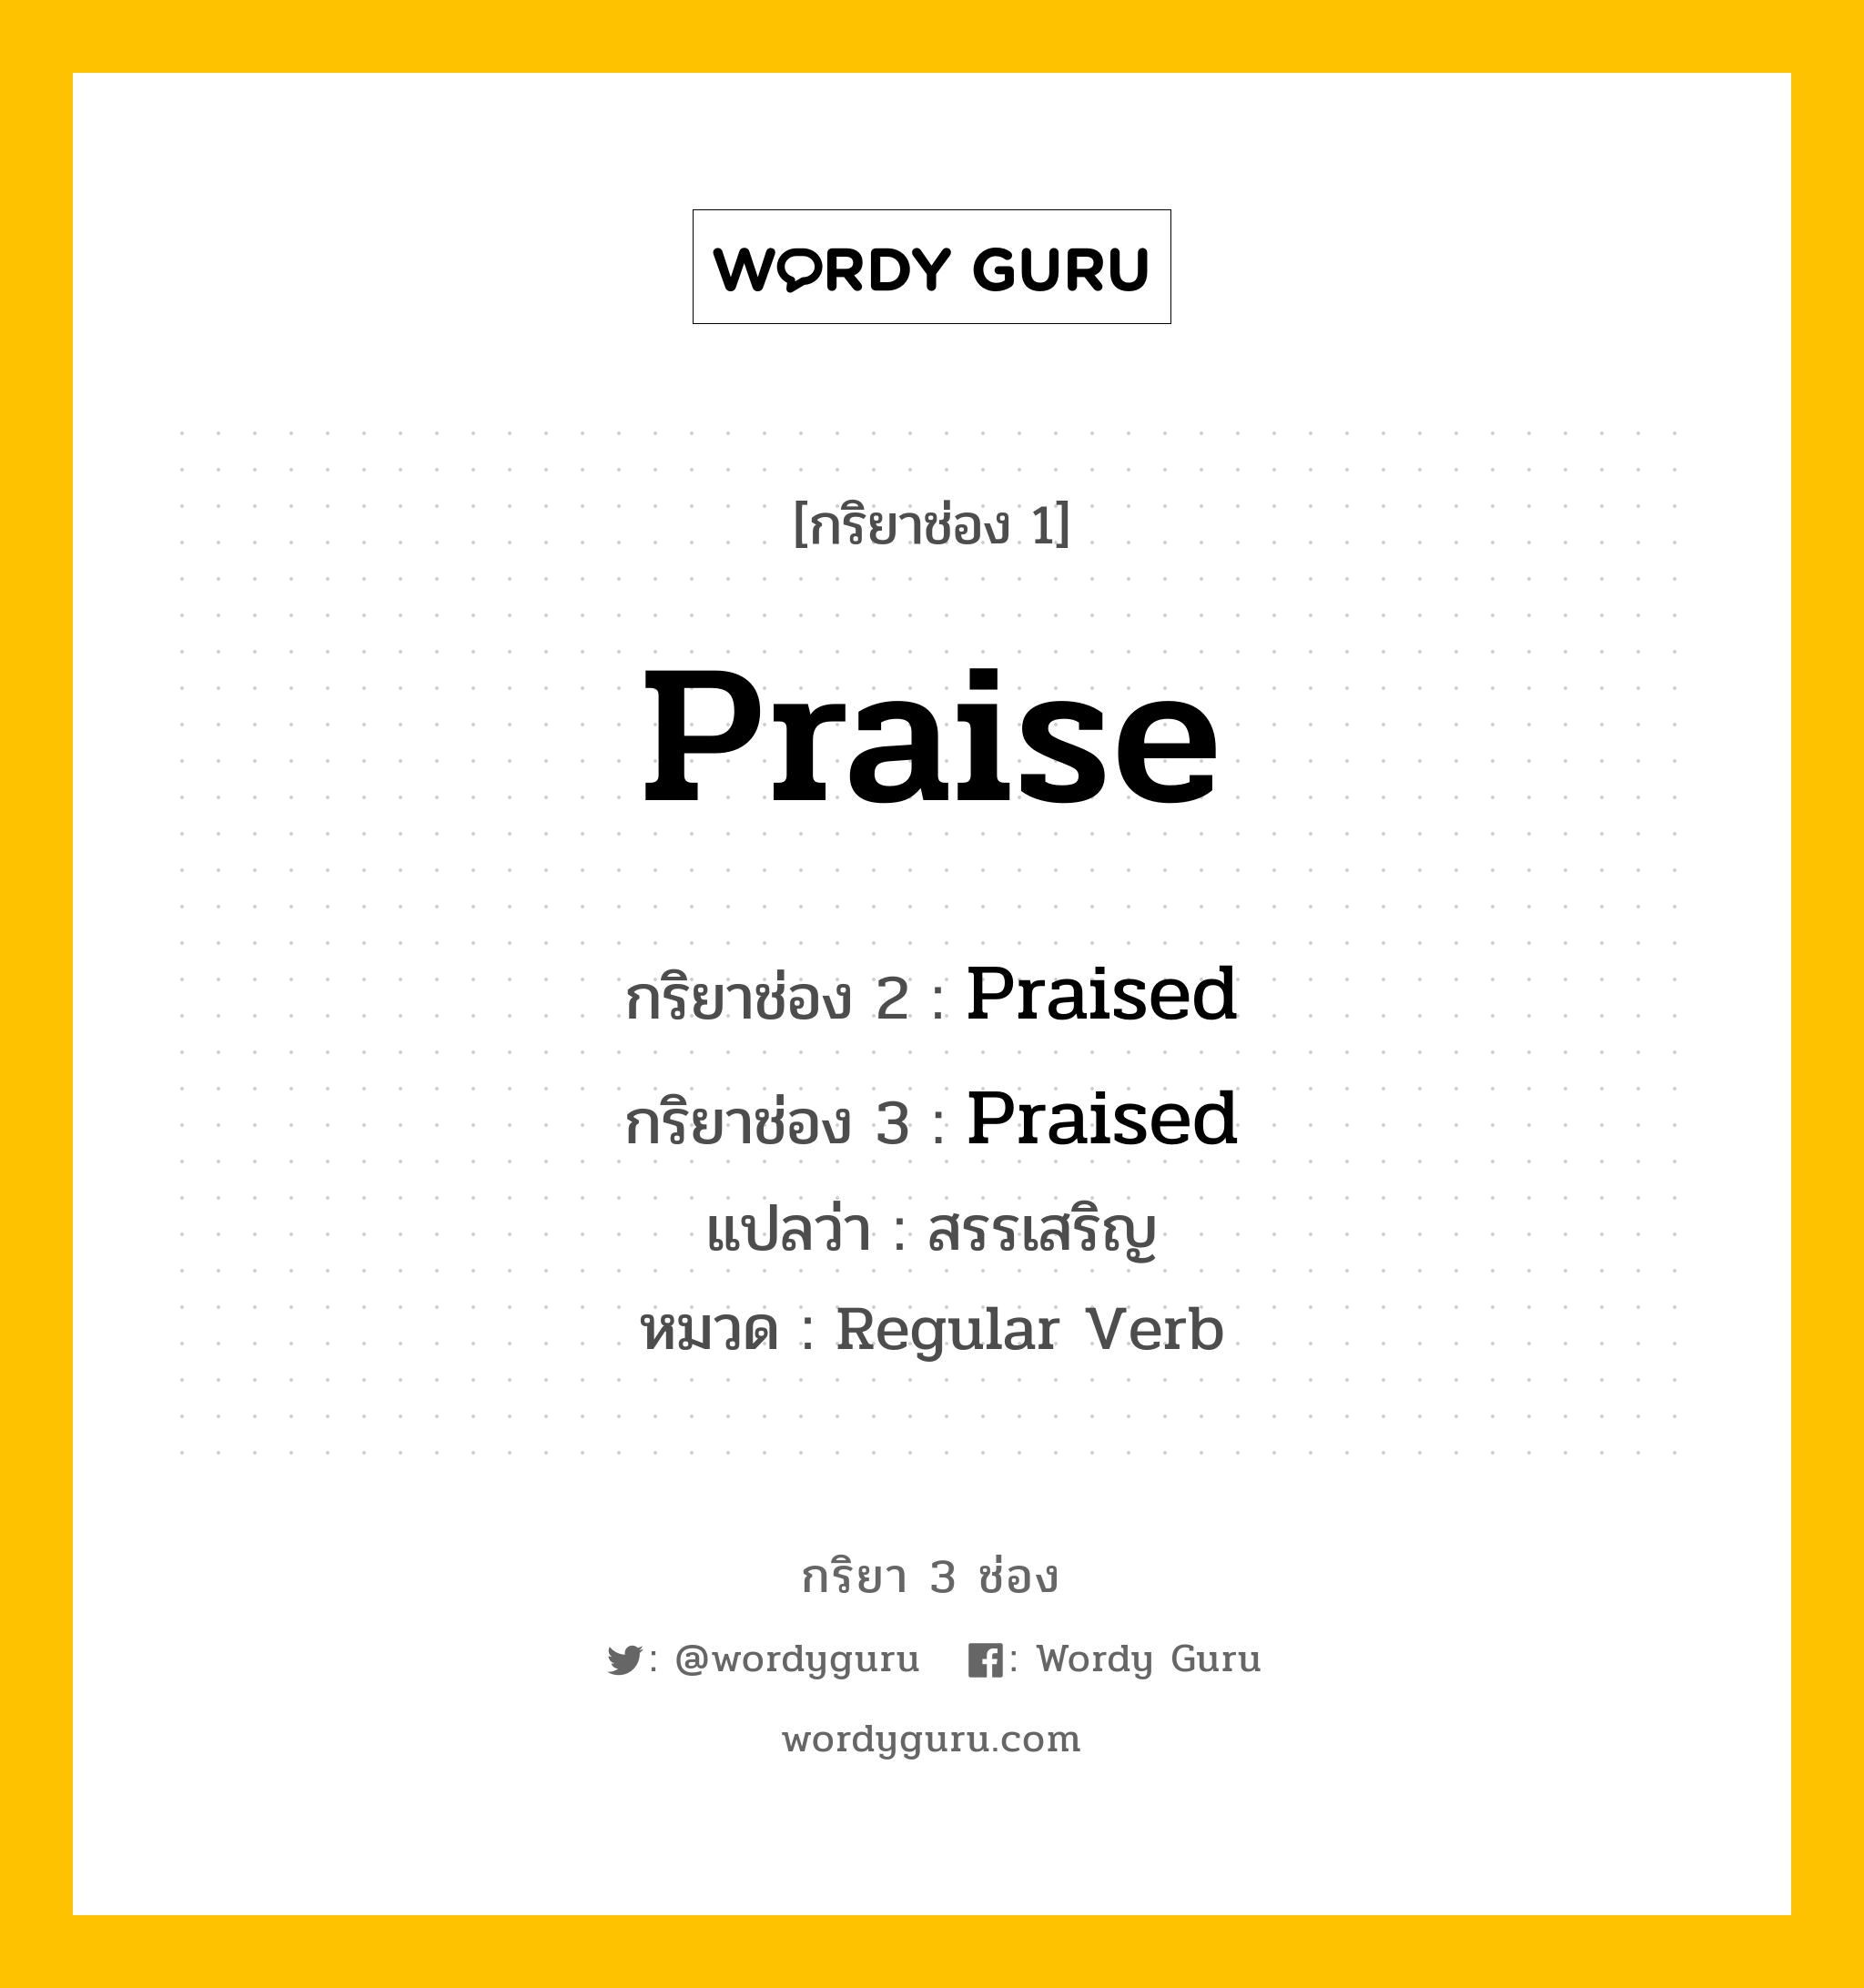 กริยา 3 ช่อง ของ Praise คืออะไร? มาดูคำอ่าน คำแปลกันเลย, กริยาช่อง 1 Praise กริยาช่อง 2 Praised กริยาช่อง 3 Praised แปลว่า สรรเสริญ หมวด Regular Verb หมวด Regular Verb